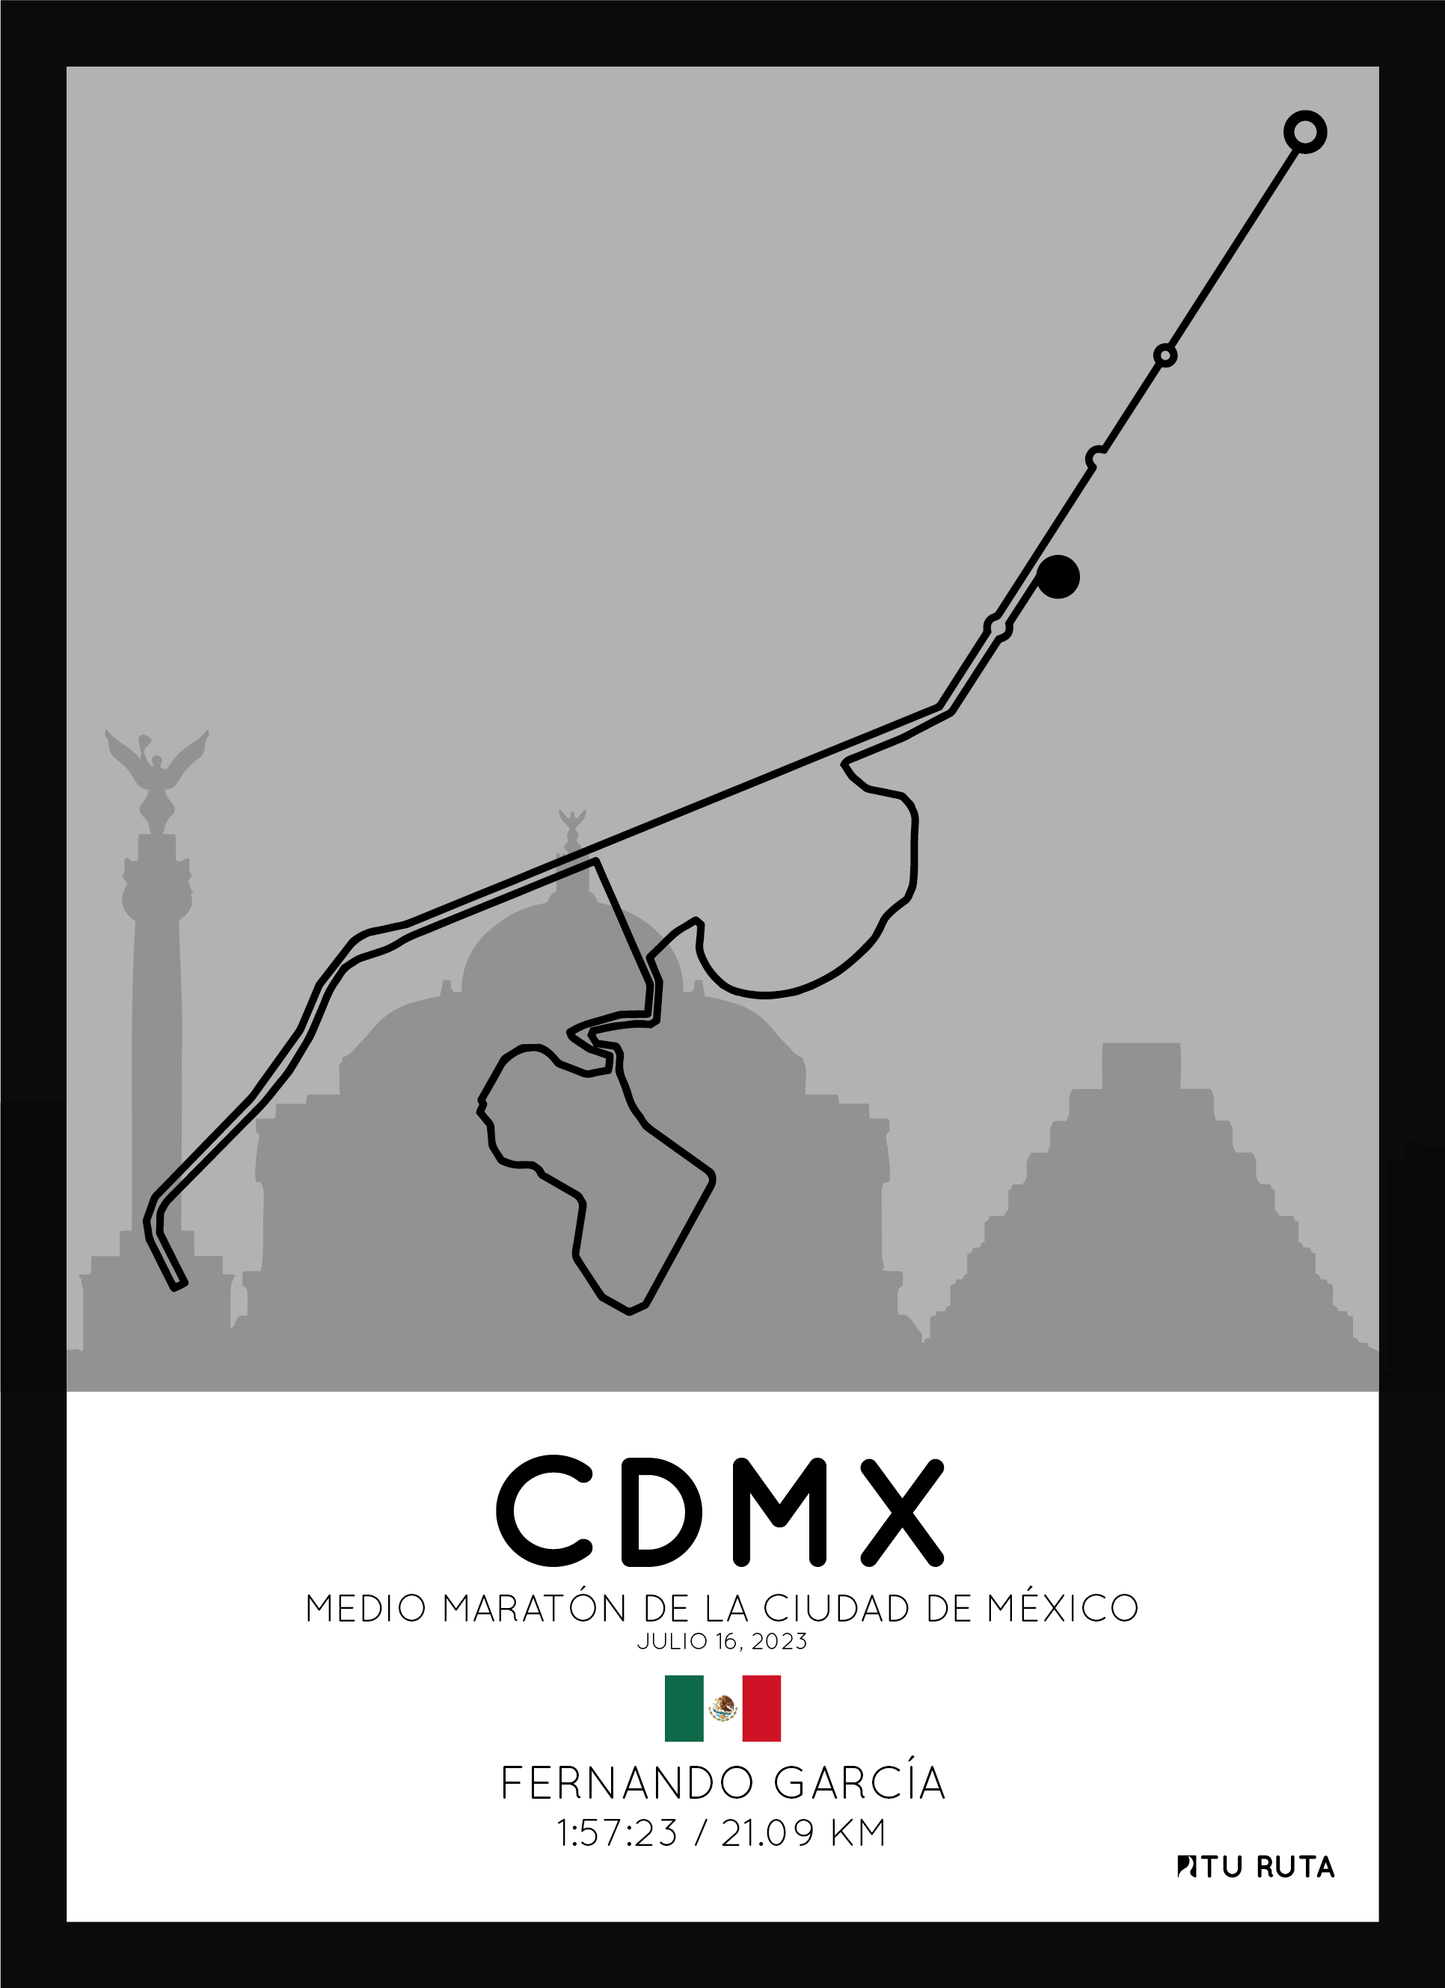 MEDIO MARATÓN DE LA CIUDAD DE MÉXICO